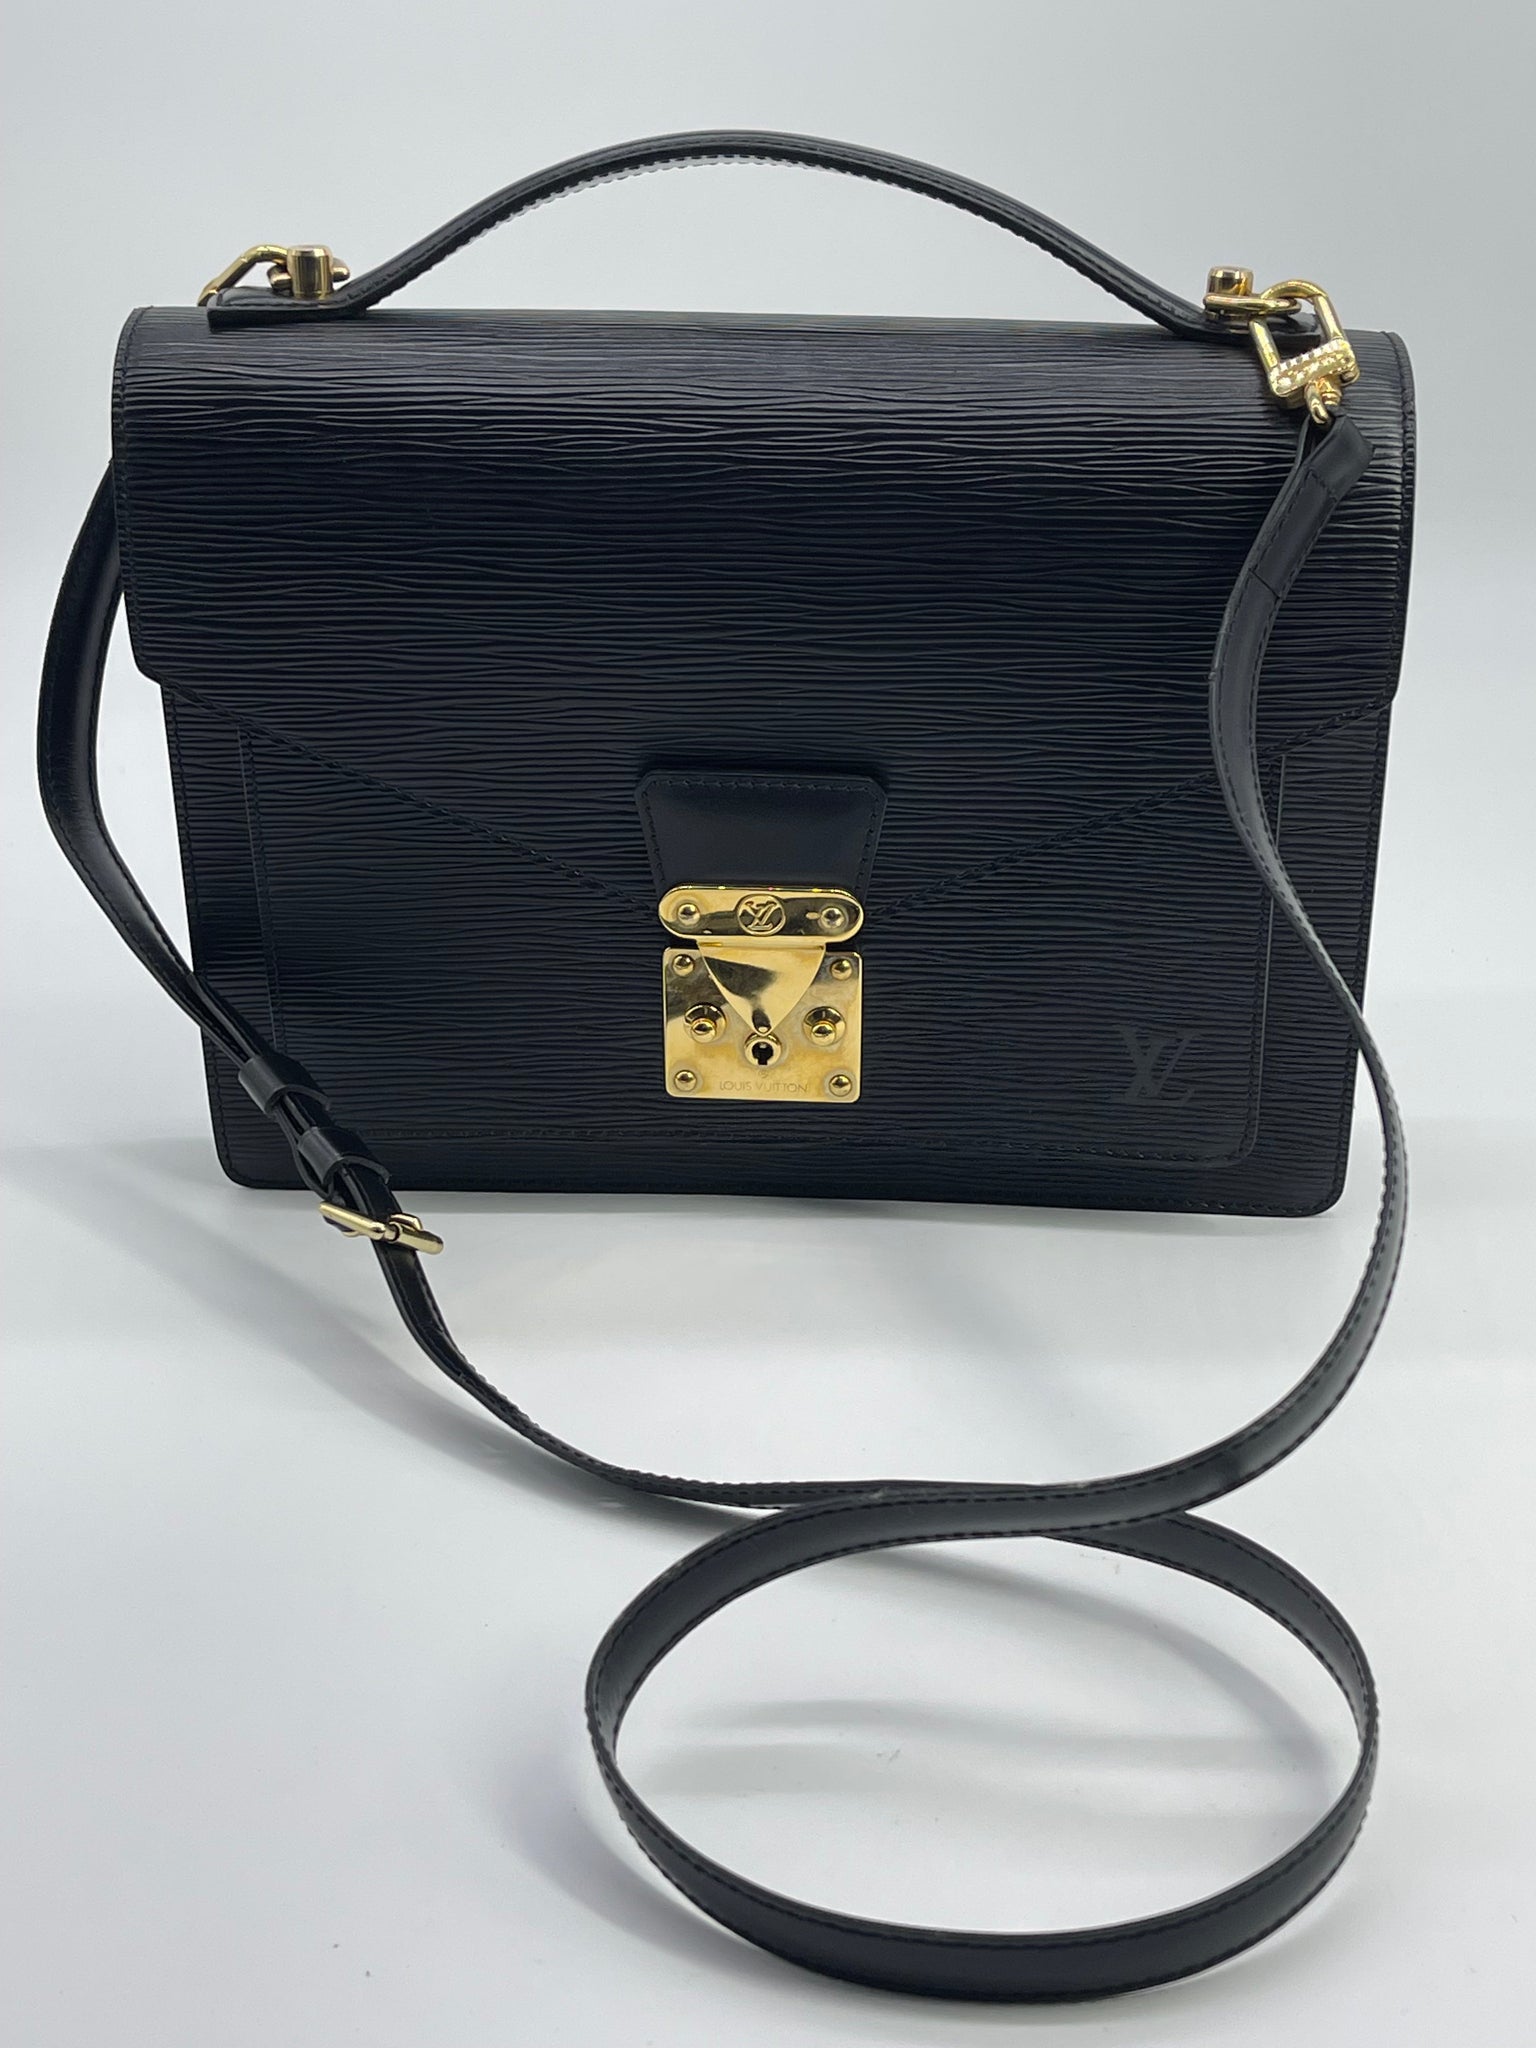 Authentic Pre-owned Louis Vuitton Epi Black Monceau Hand Bag Satchel B